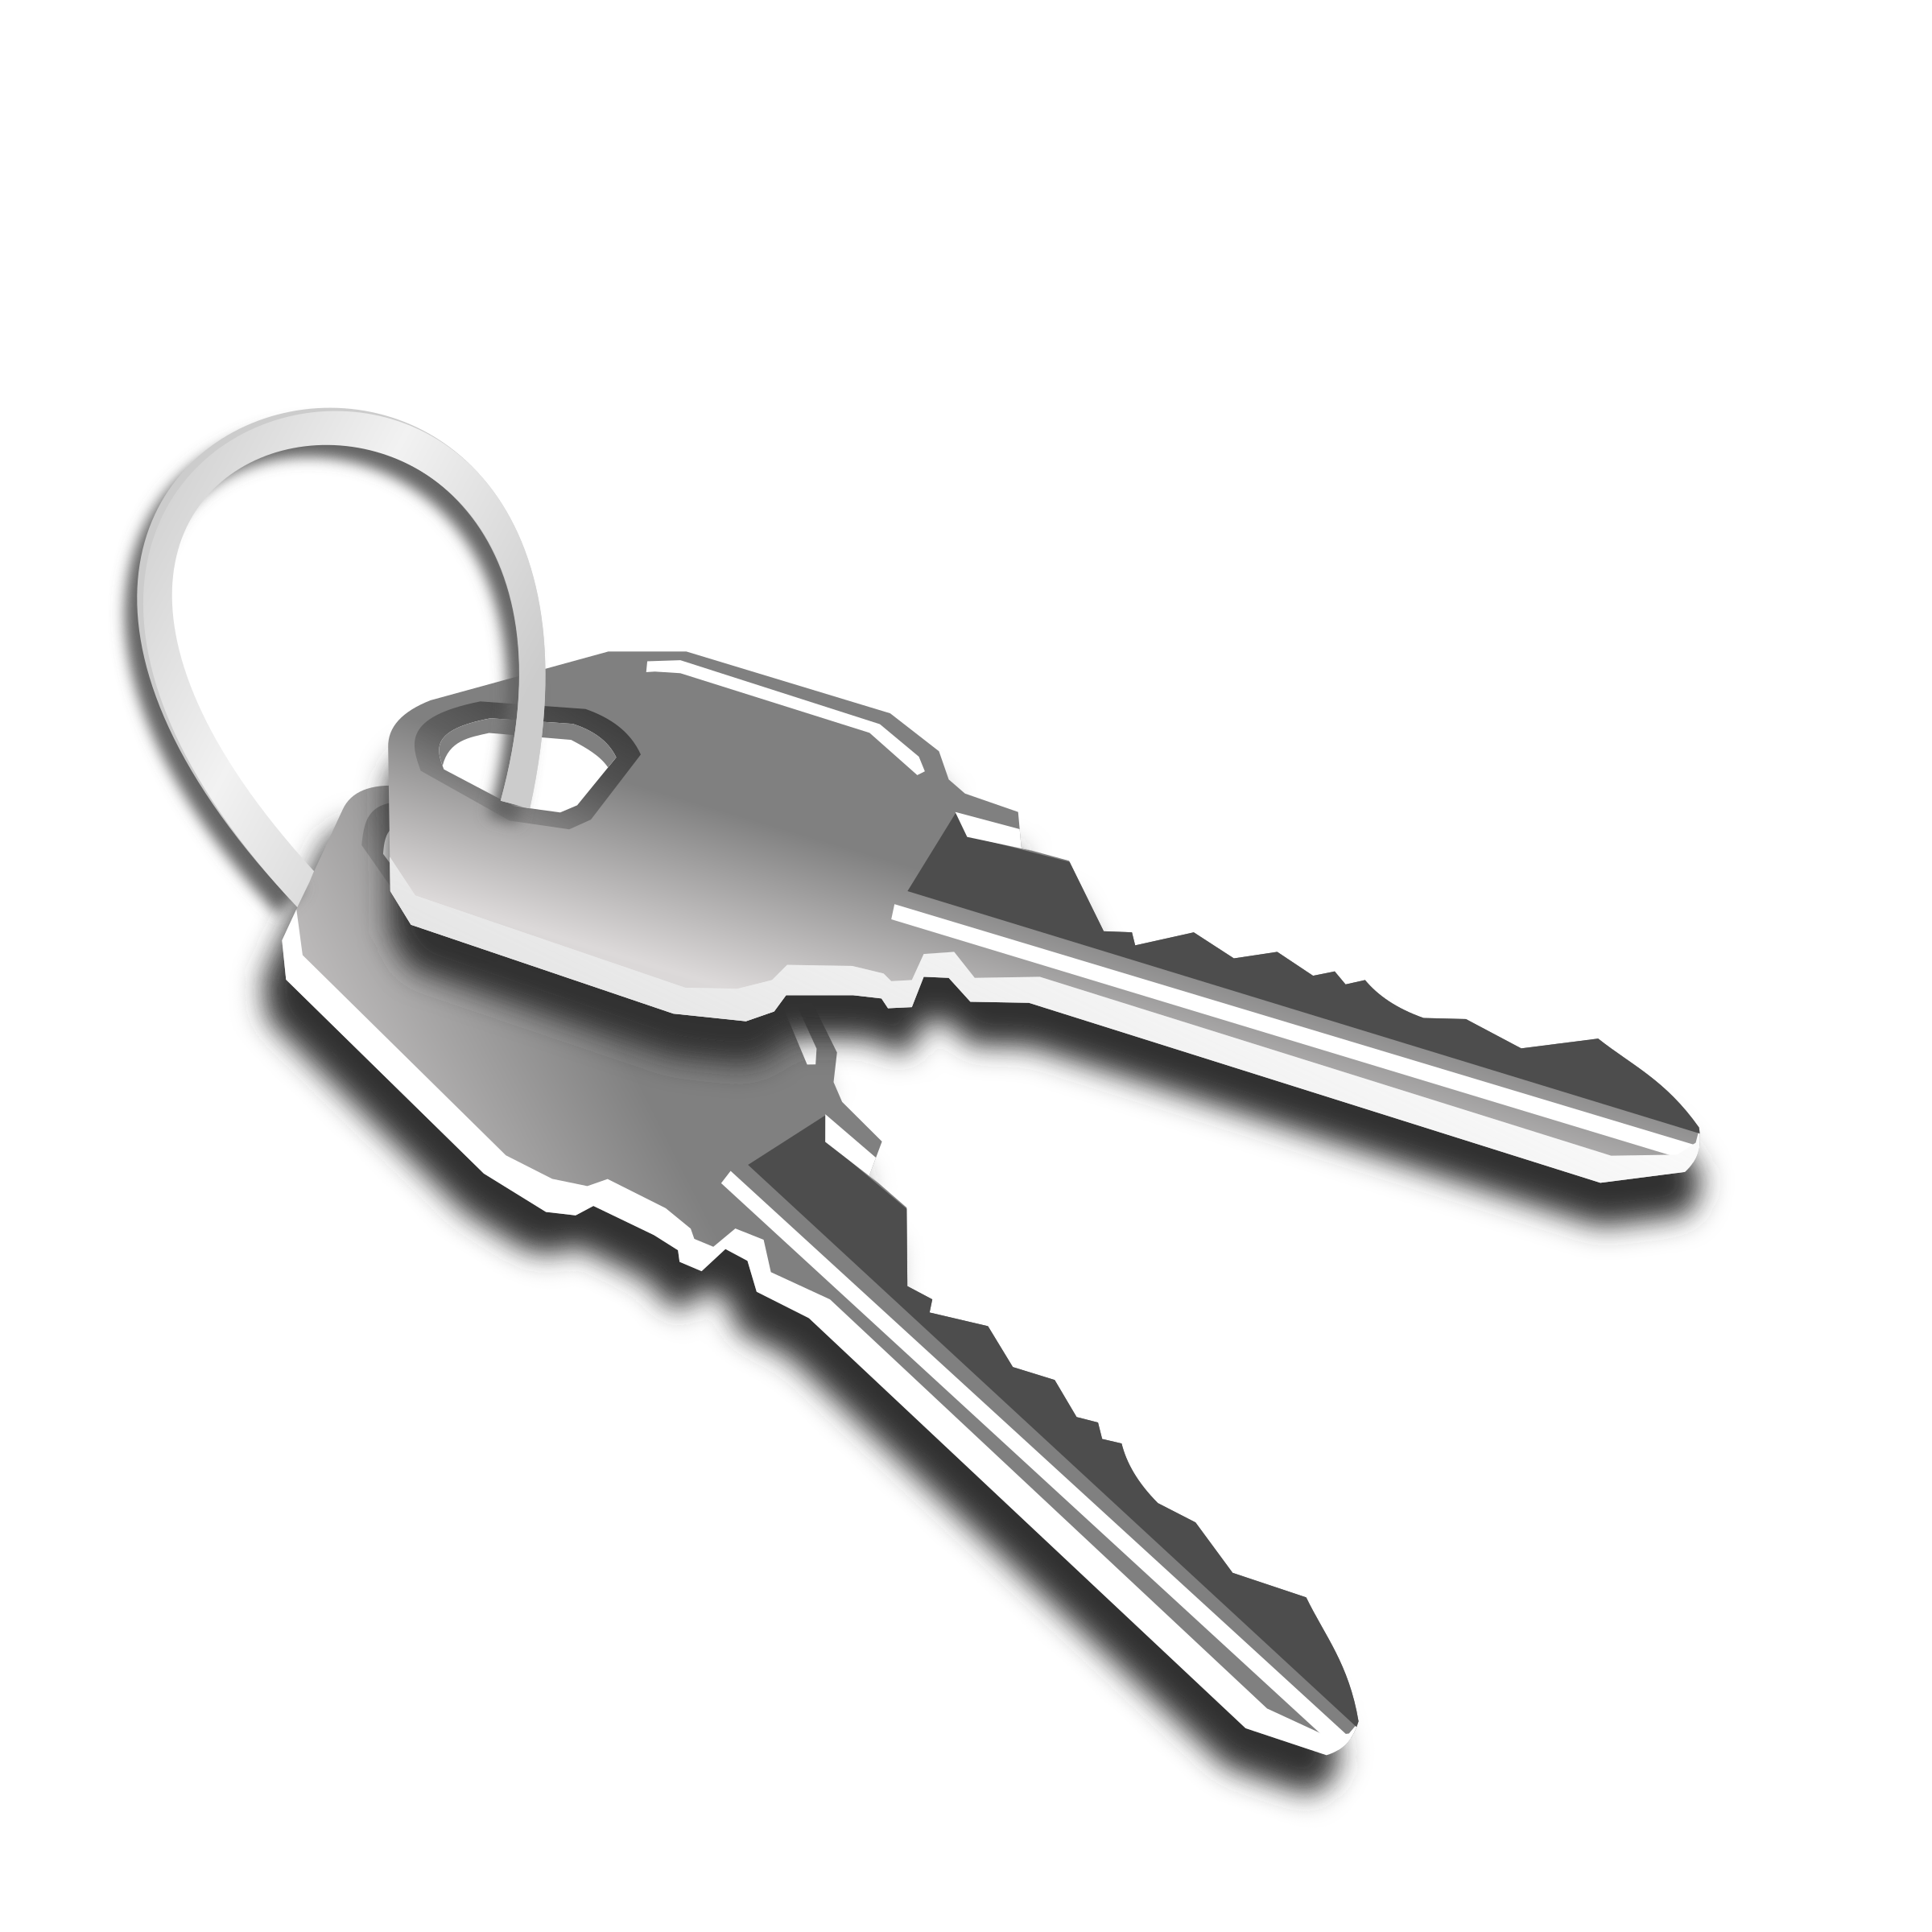 Keys PNG Image